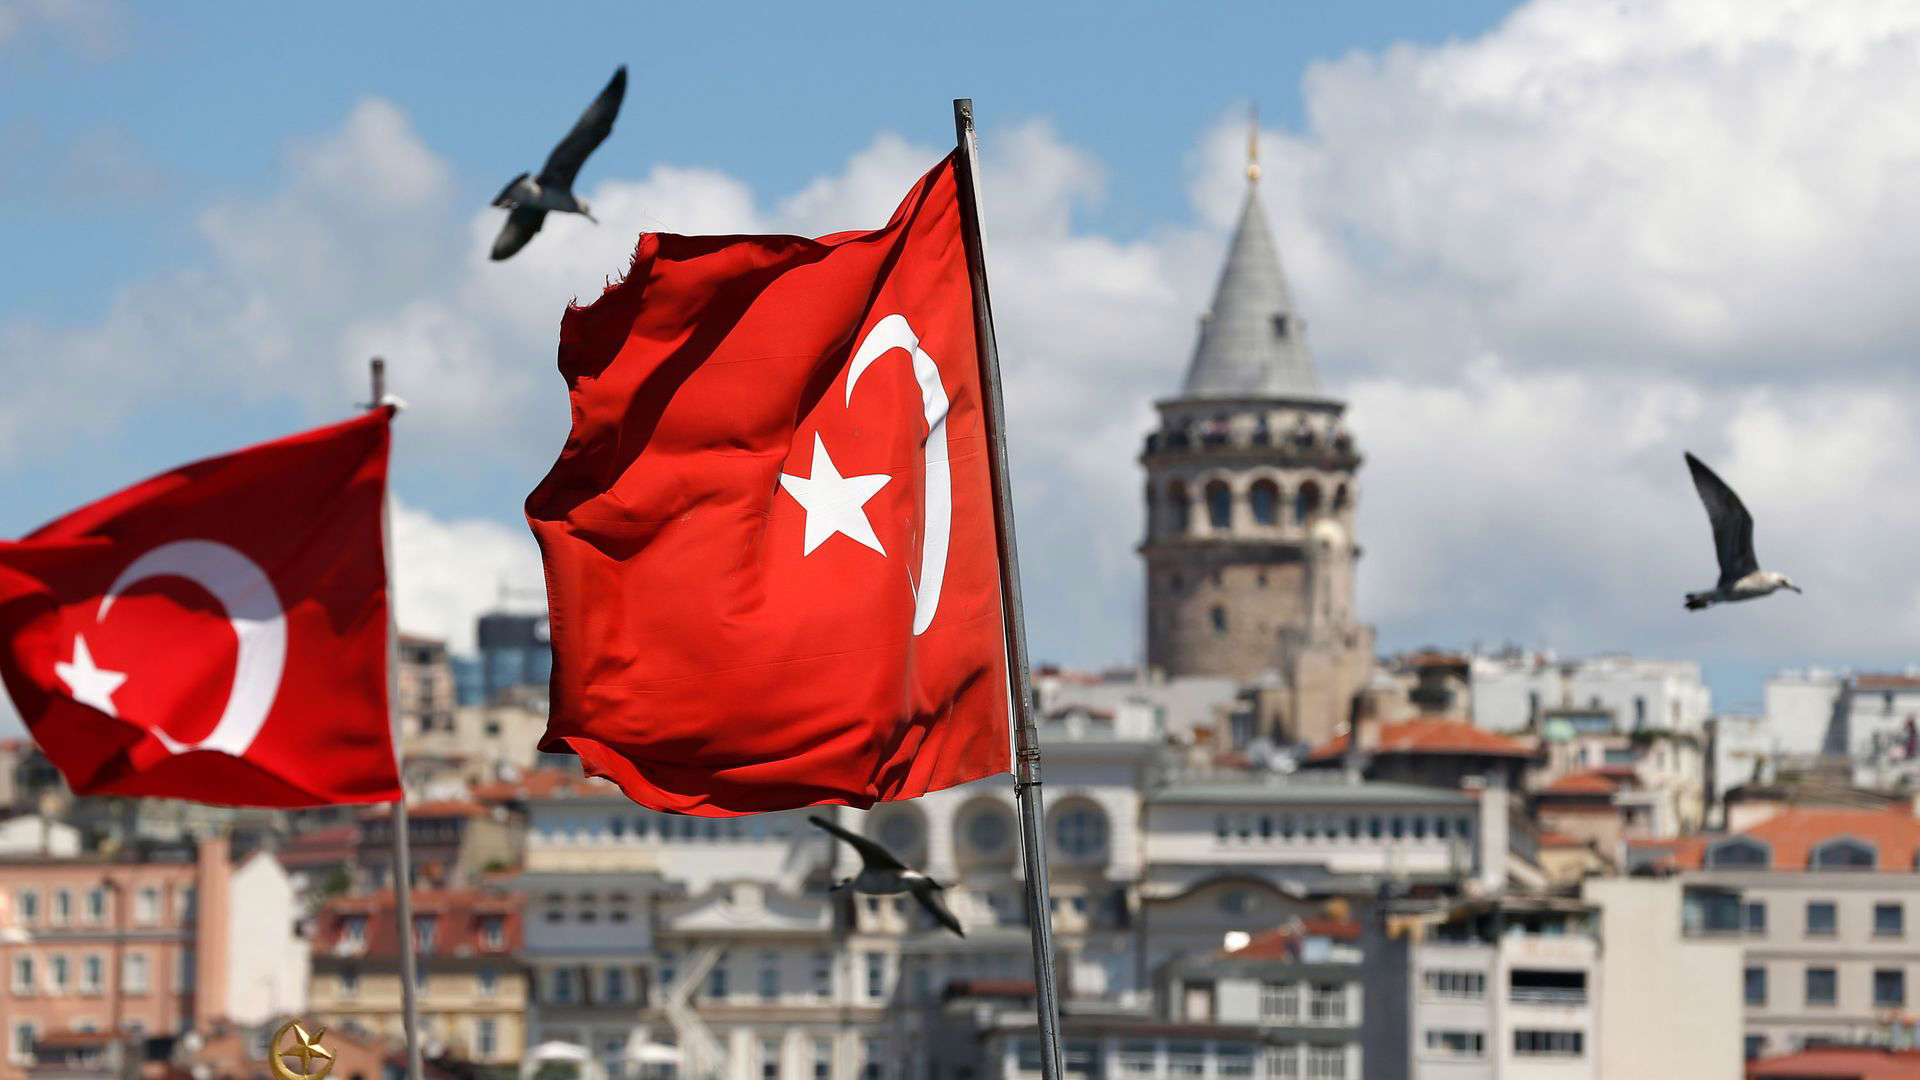 Türkei: Zentralbank erhöht Leitzins massiv auf 15 Prozent